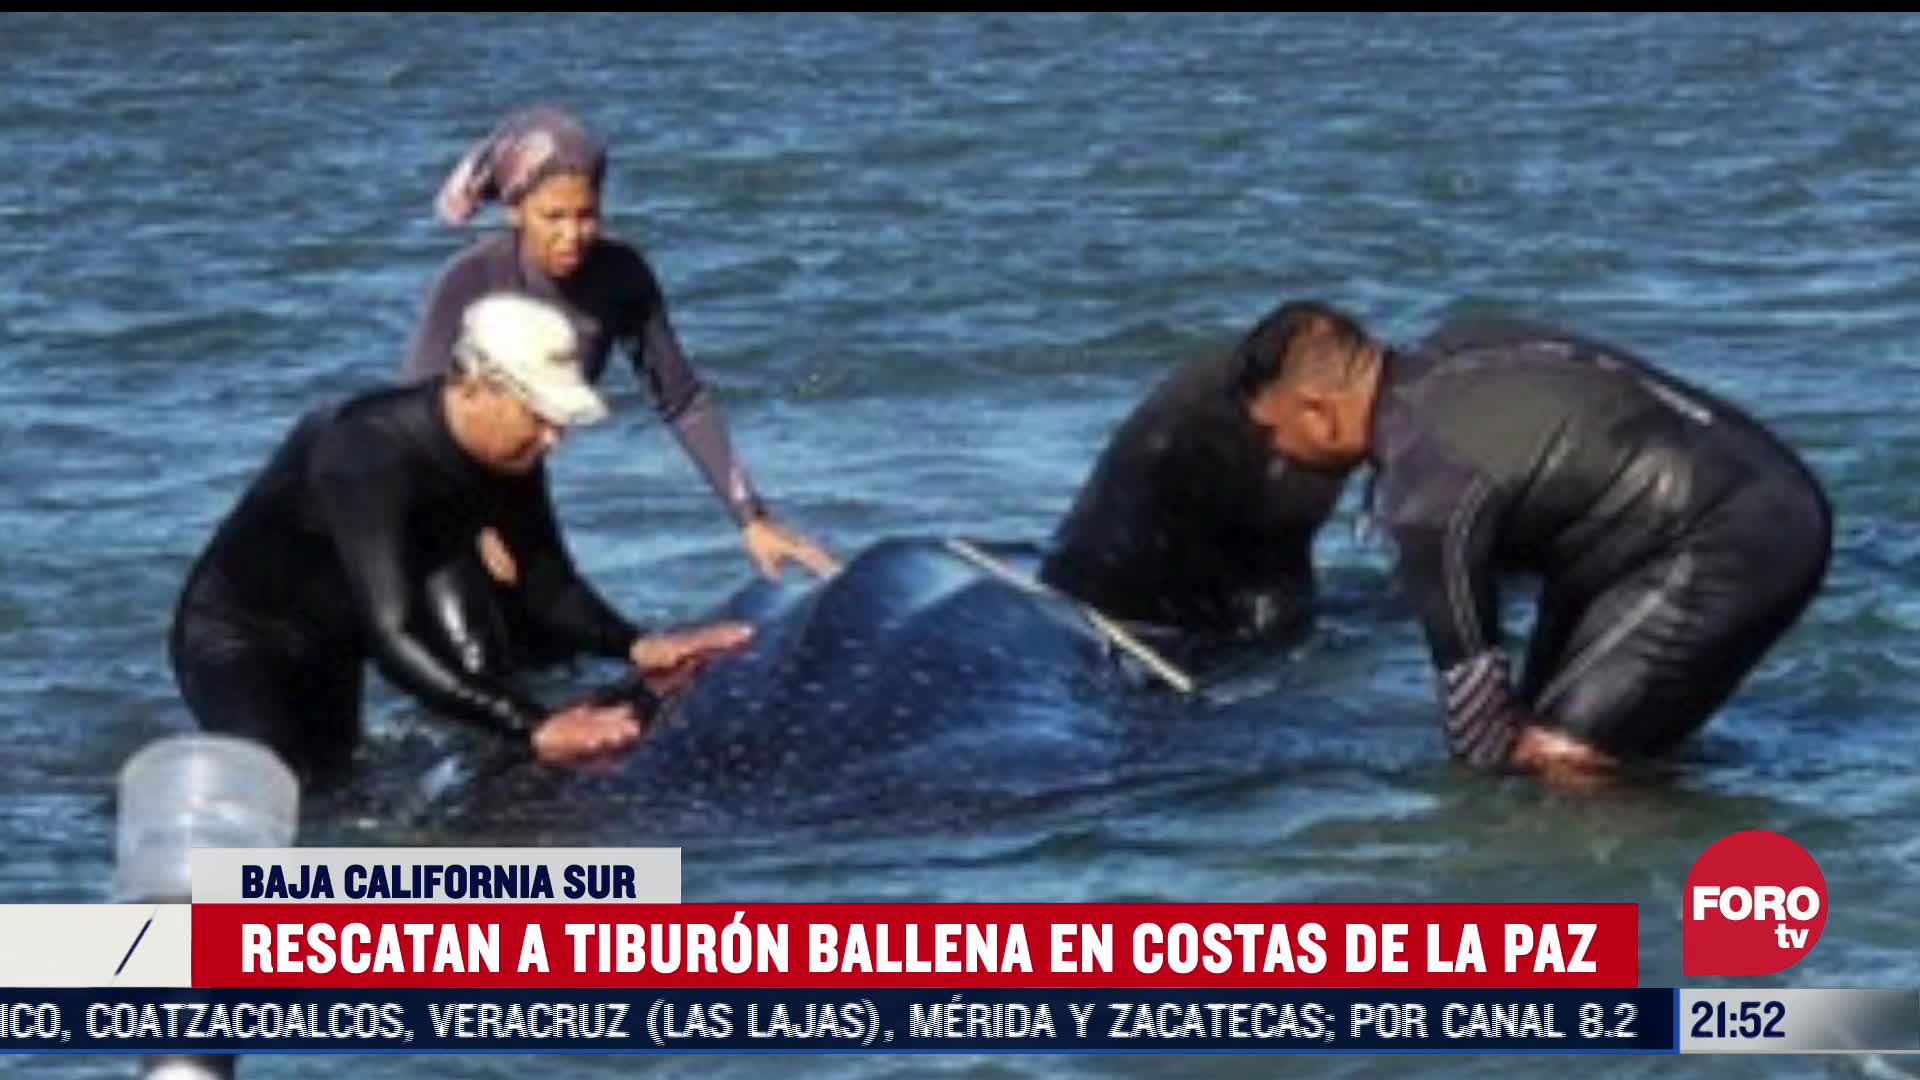 profepa rescata a tiburon ballena en baja california sur